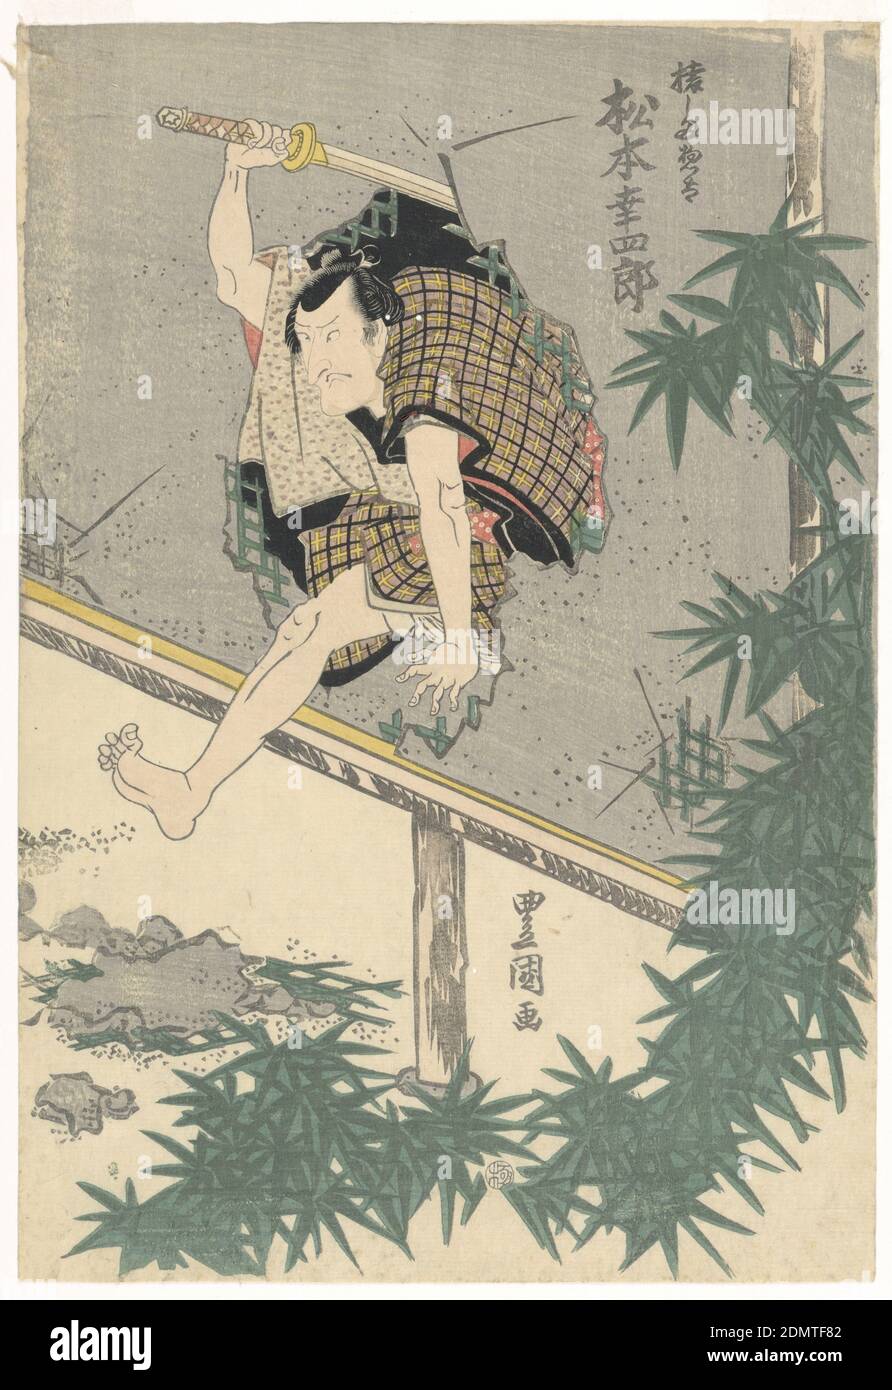 Matsumoto Koshiro bondissant à travers un mur, Woodblock imprimé à l'encre de couleur sur papier, un samouraï animé, Matsumoto Koshiro est bondissant à travers un trou dans un mur avec son épée à mi-swing au-dessus de sa tête. Remarquez comment cet imprimé exaltant élégamment encadré de feuilles de bambou complète la forme organique du trou perforé., Japon, ca. 1835, théâtre, Imprimer Banque D'Images